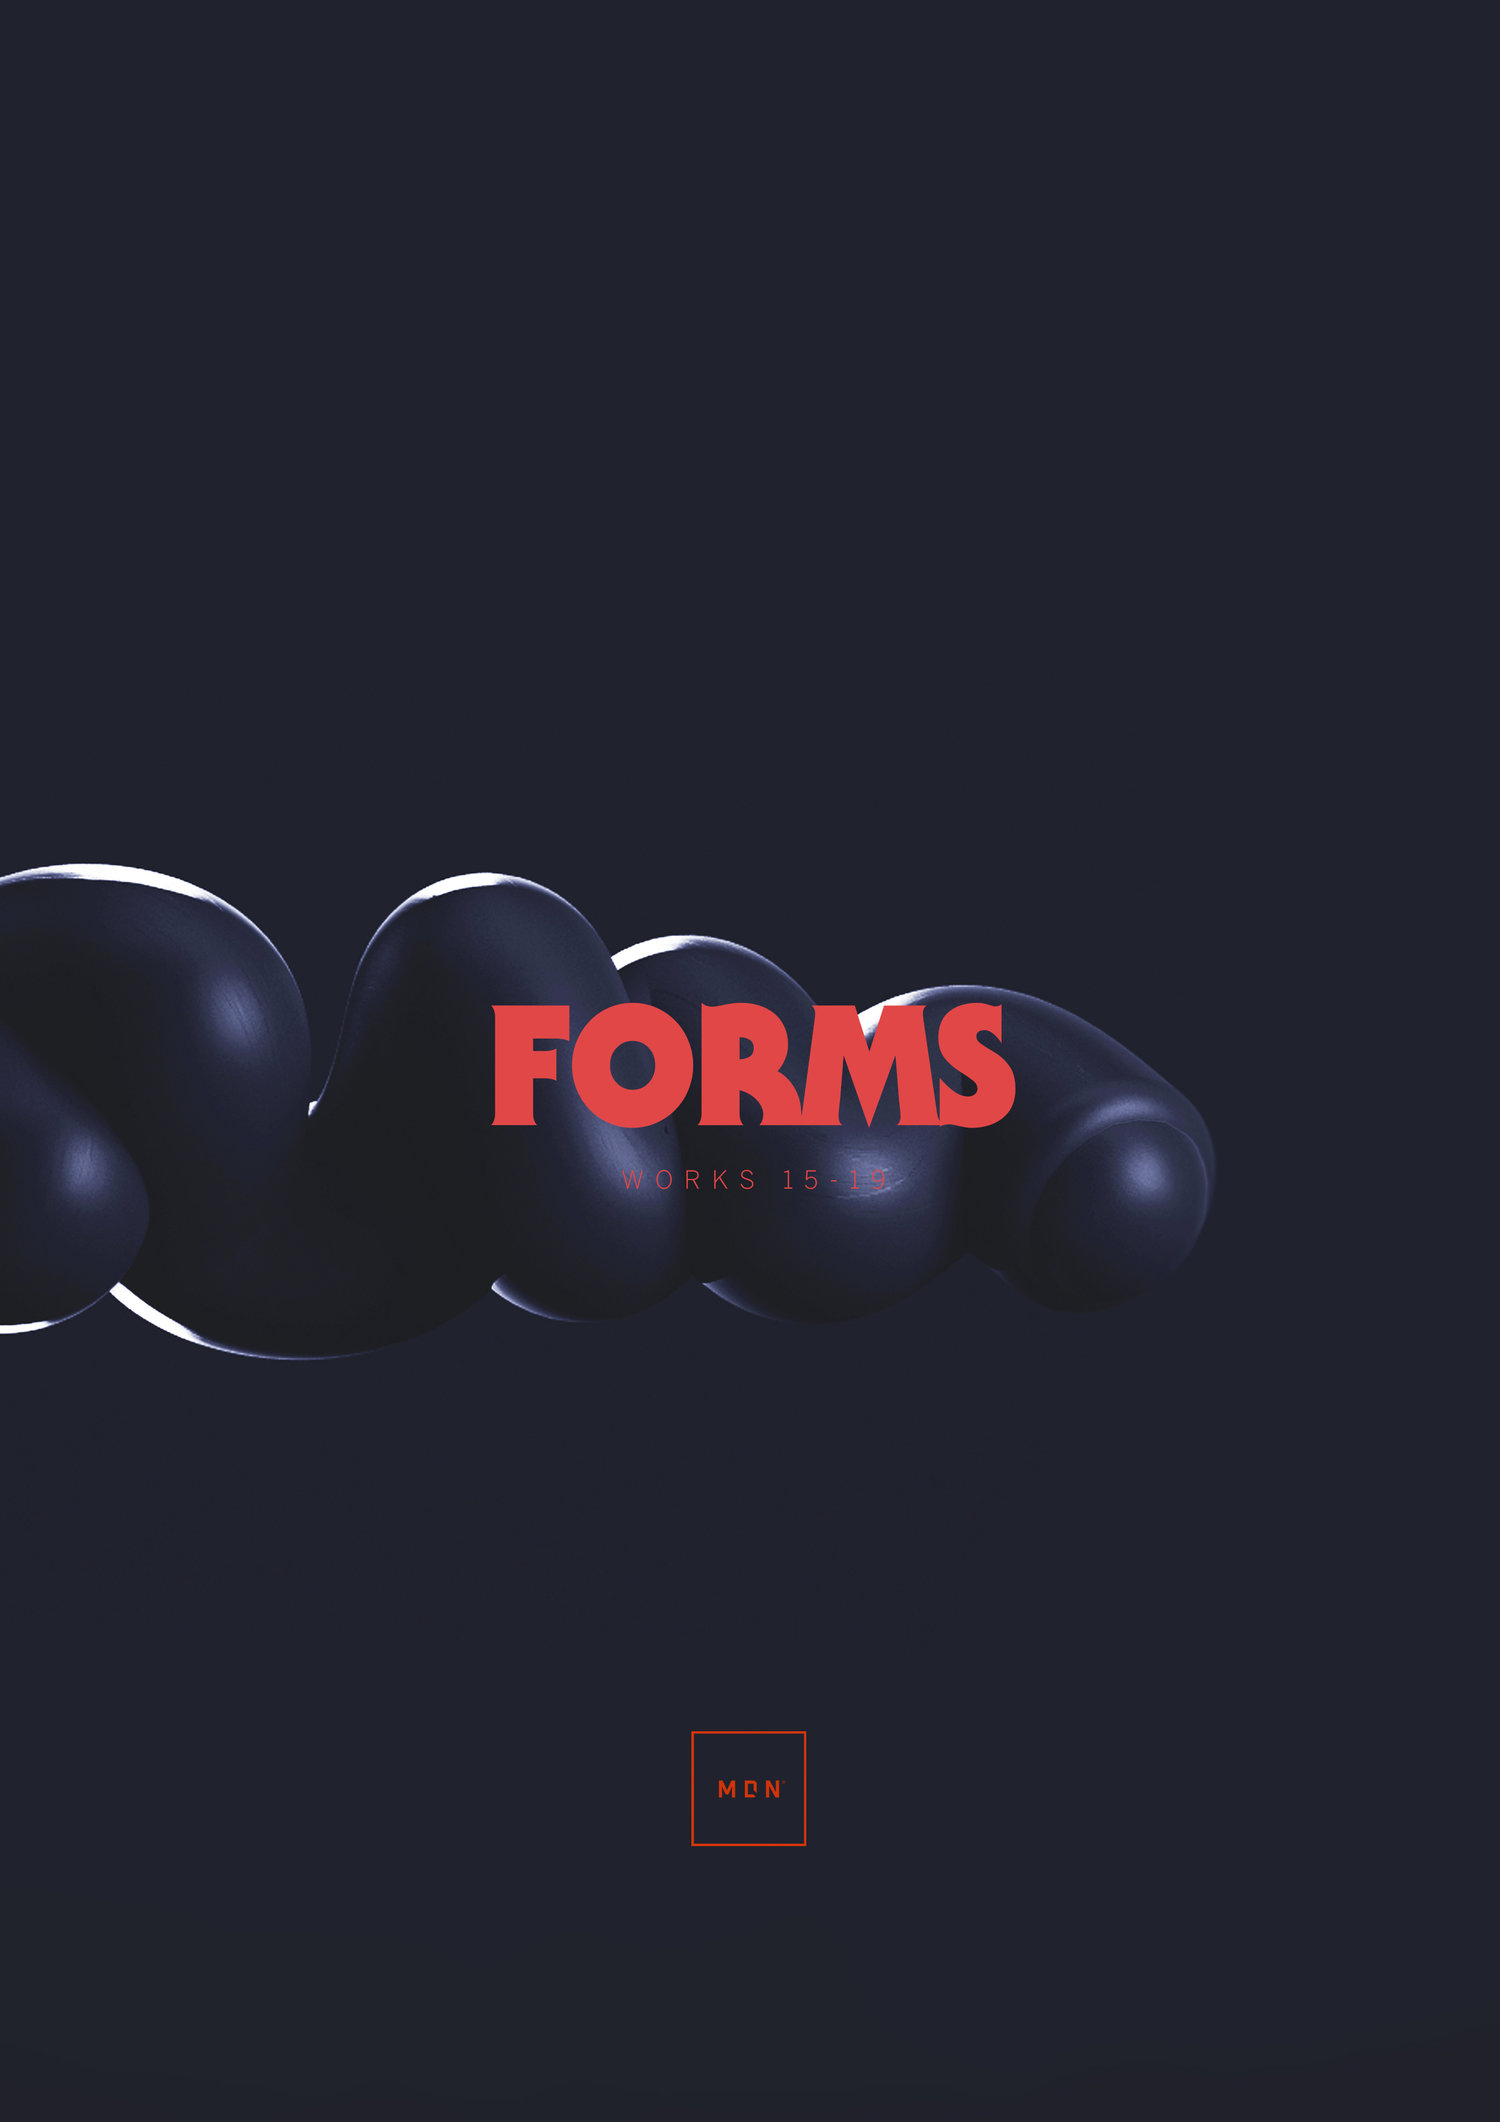 MDN - Forms (digital) — MDN™